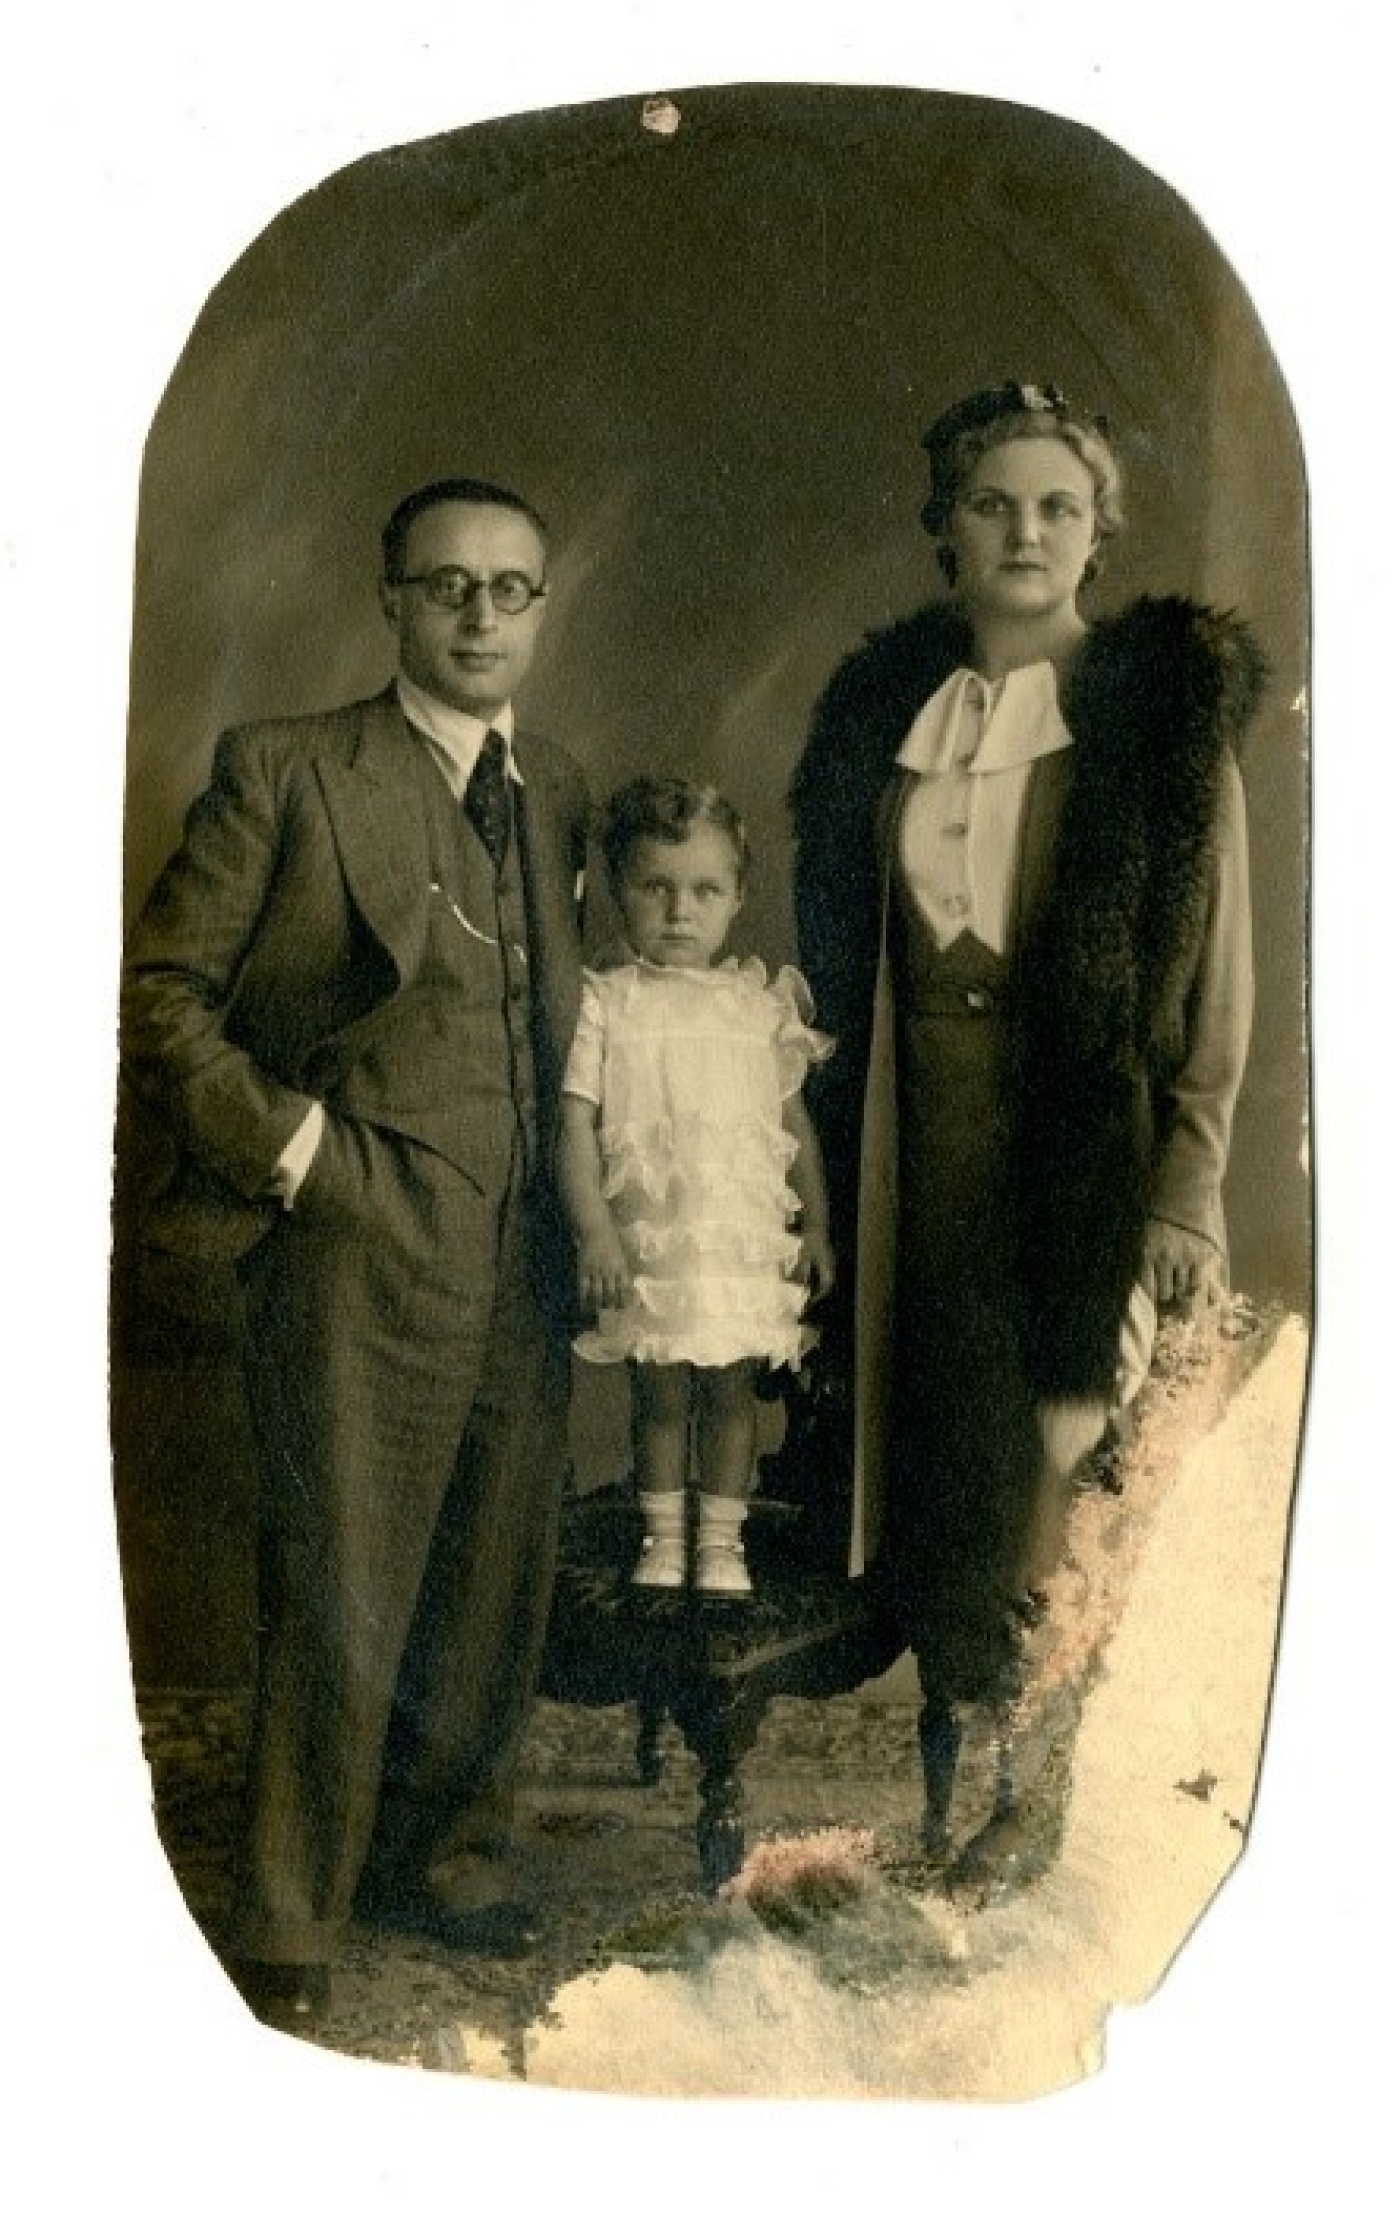 Avram Zise Cohn met vrouw en dochter vóór de oorlog
Bron: beeldbank.kazernedossin.eu